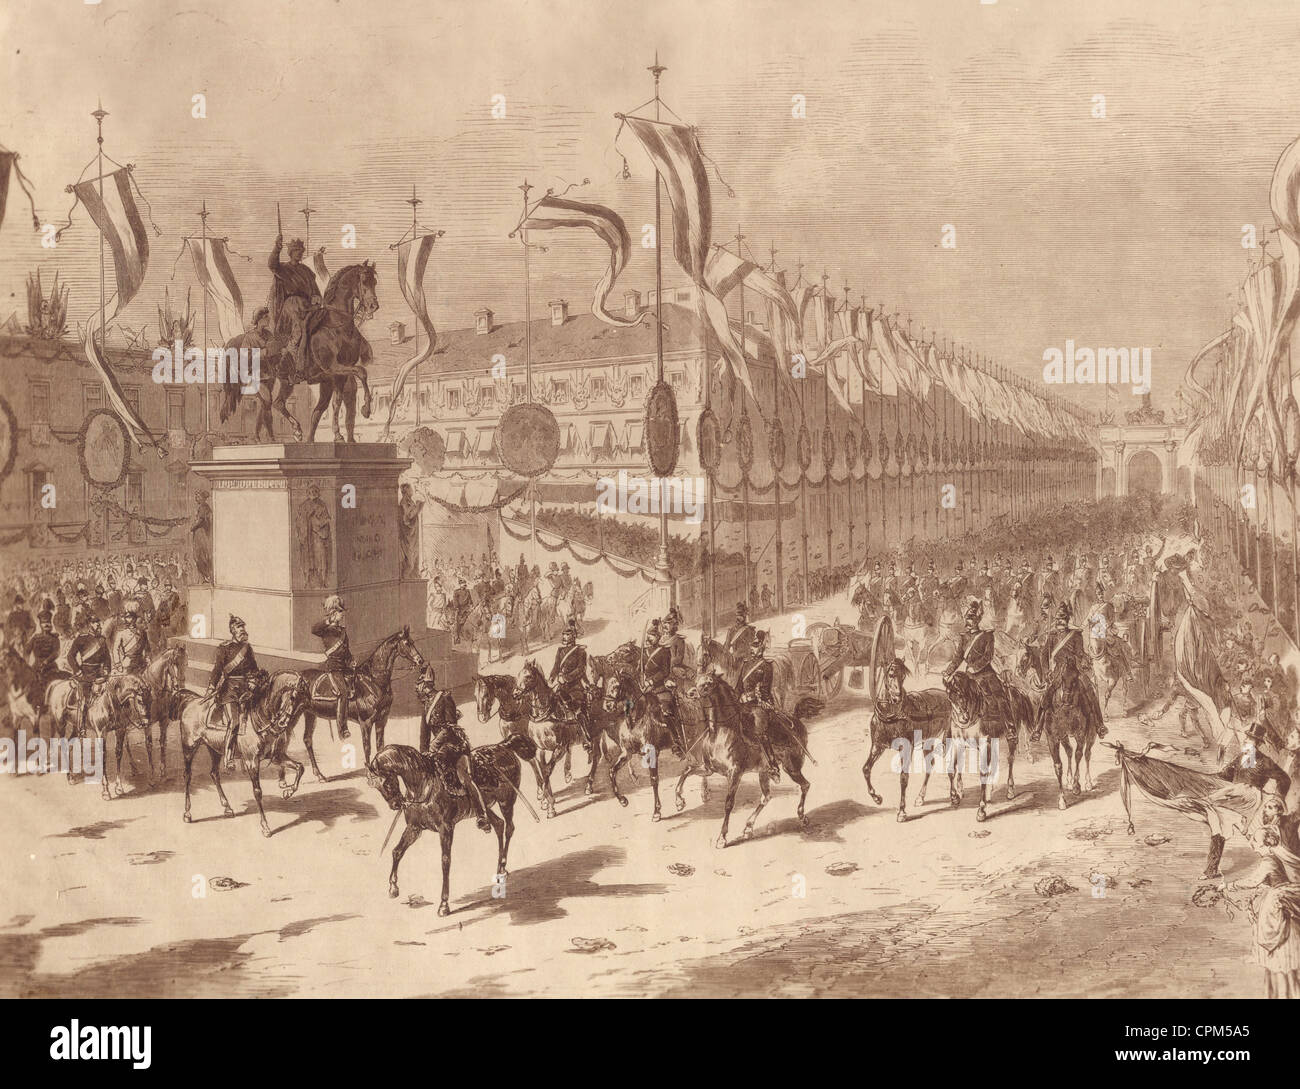 Retour des troupes bavaroises après la guerre franco-prussienne, 1871 Banque D'Images